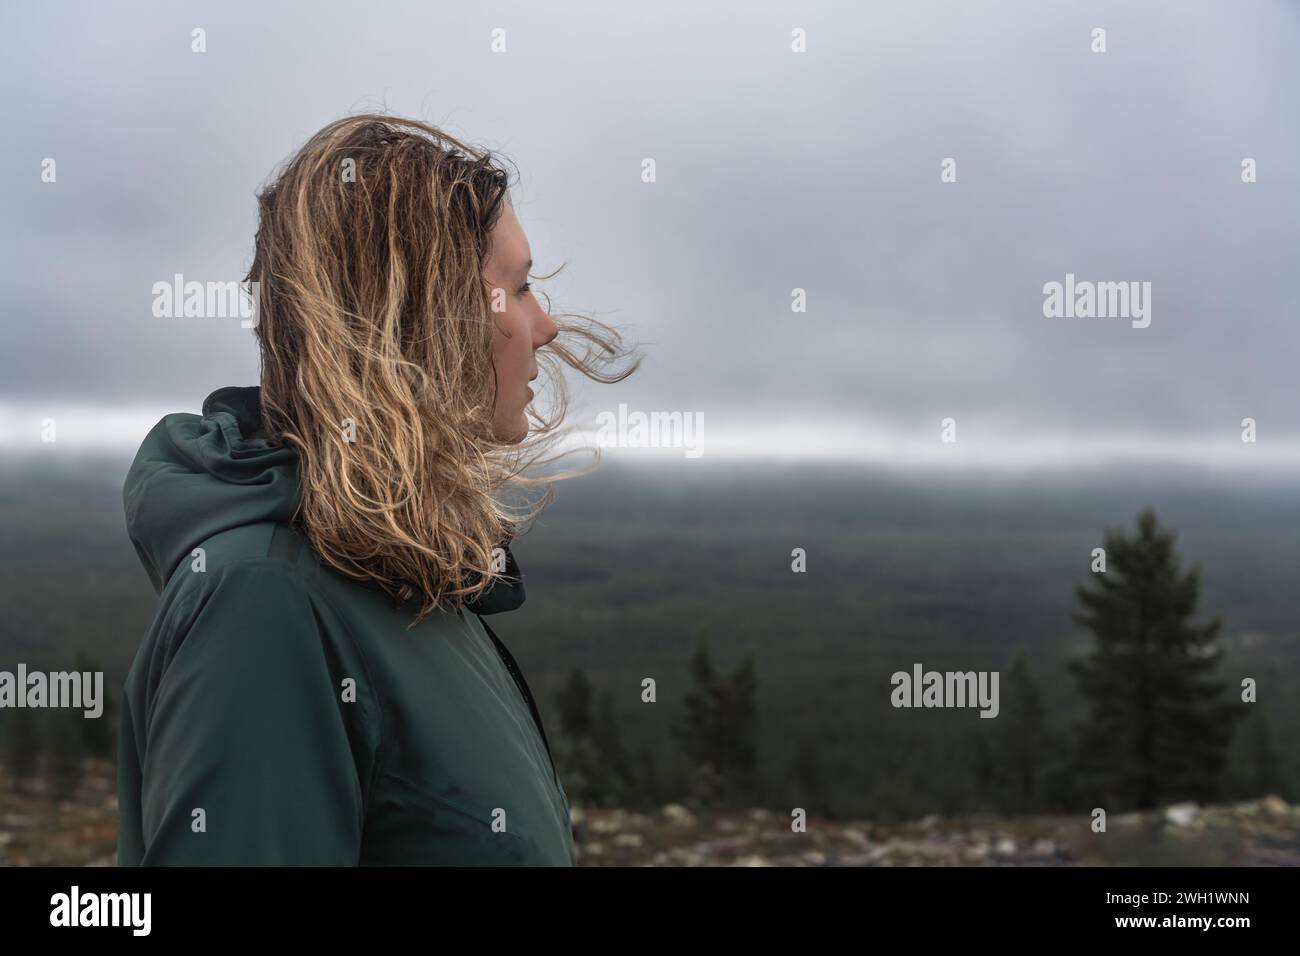 Seitenansicht einer Frau mit blonden Haaren, die in der nordischen Natur im Wind wehen, im Kopf, der über den Wald und die stürmischen Wolken im Hintergrund blickt Stockfoto